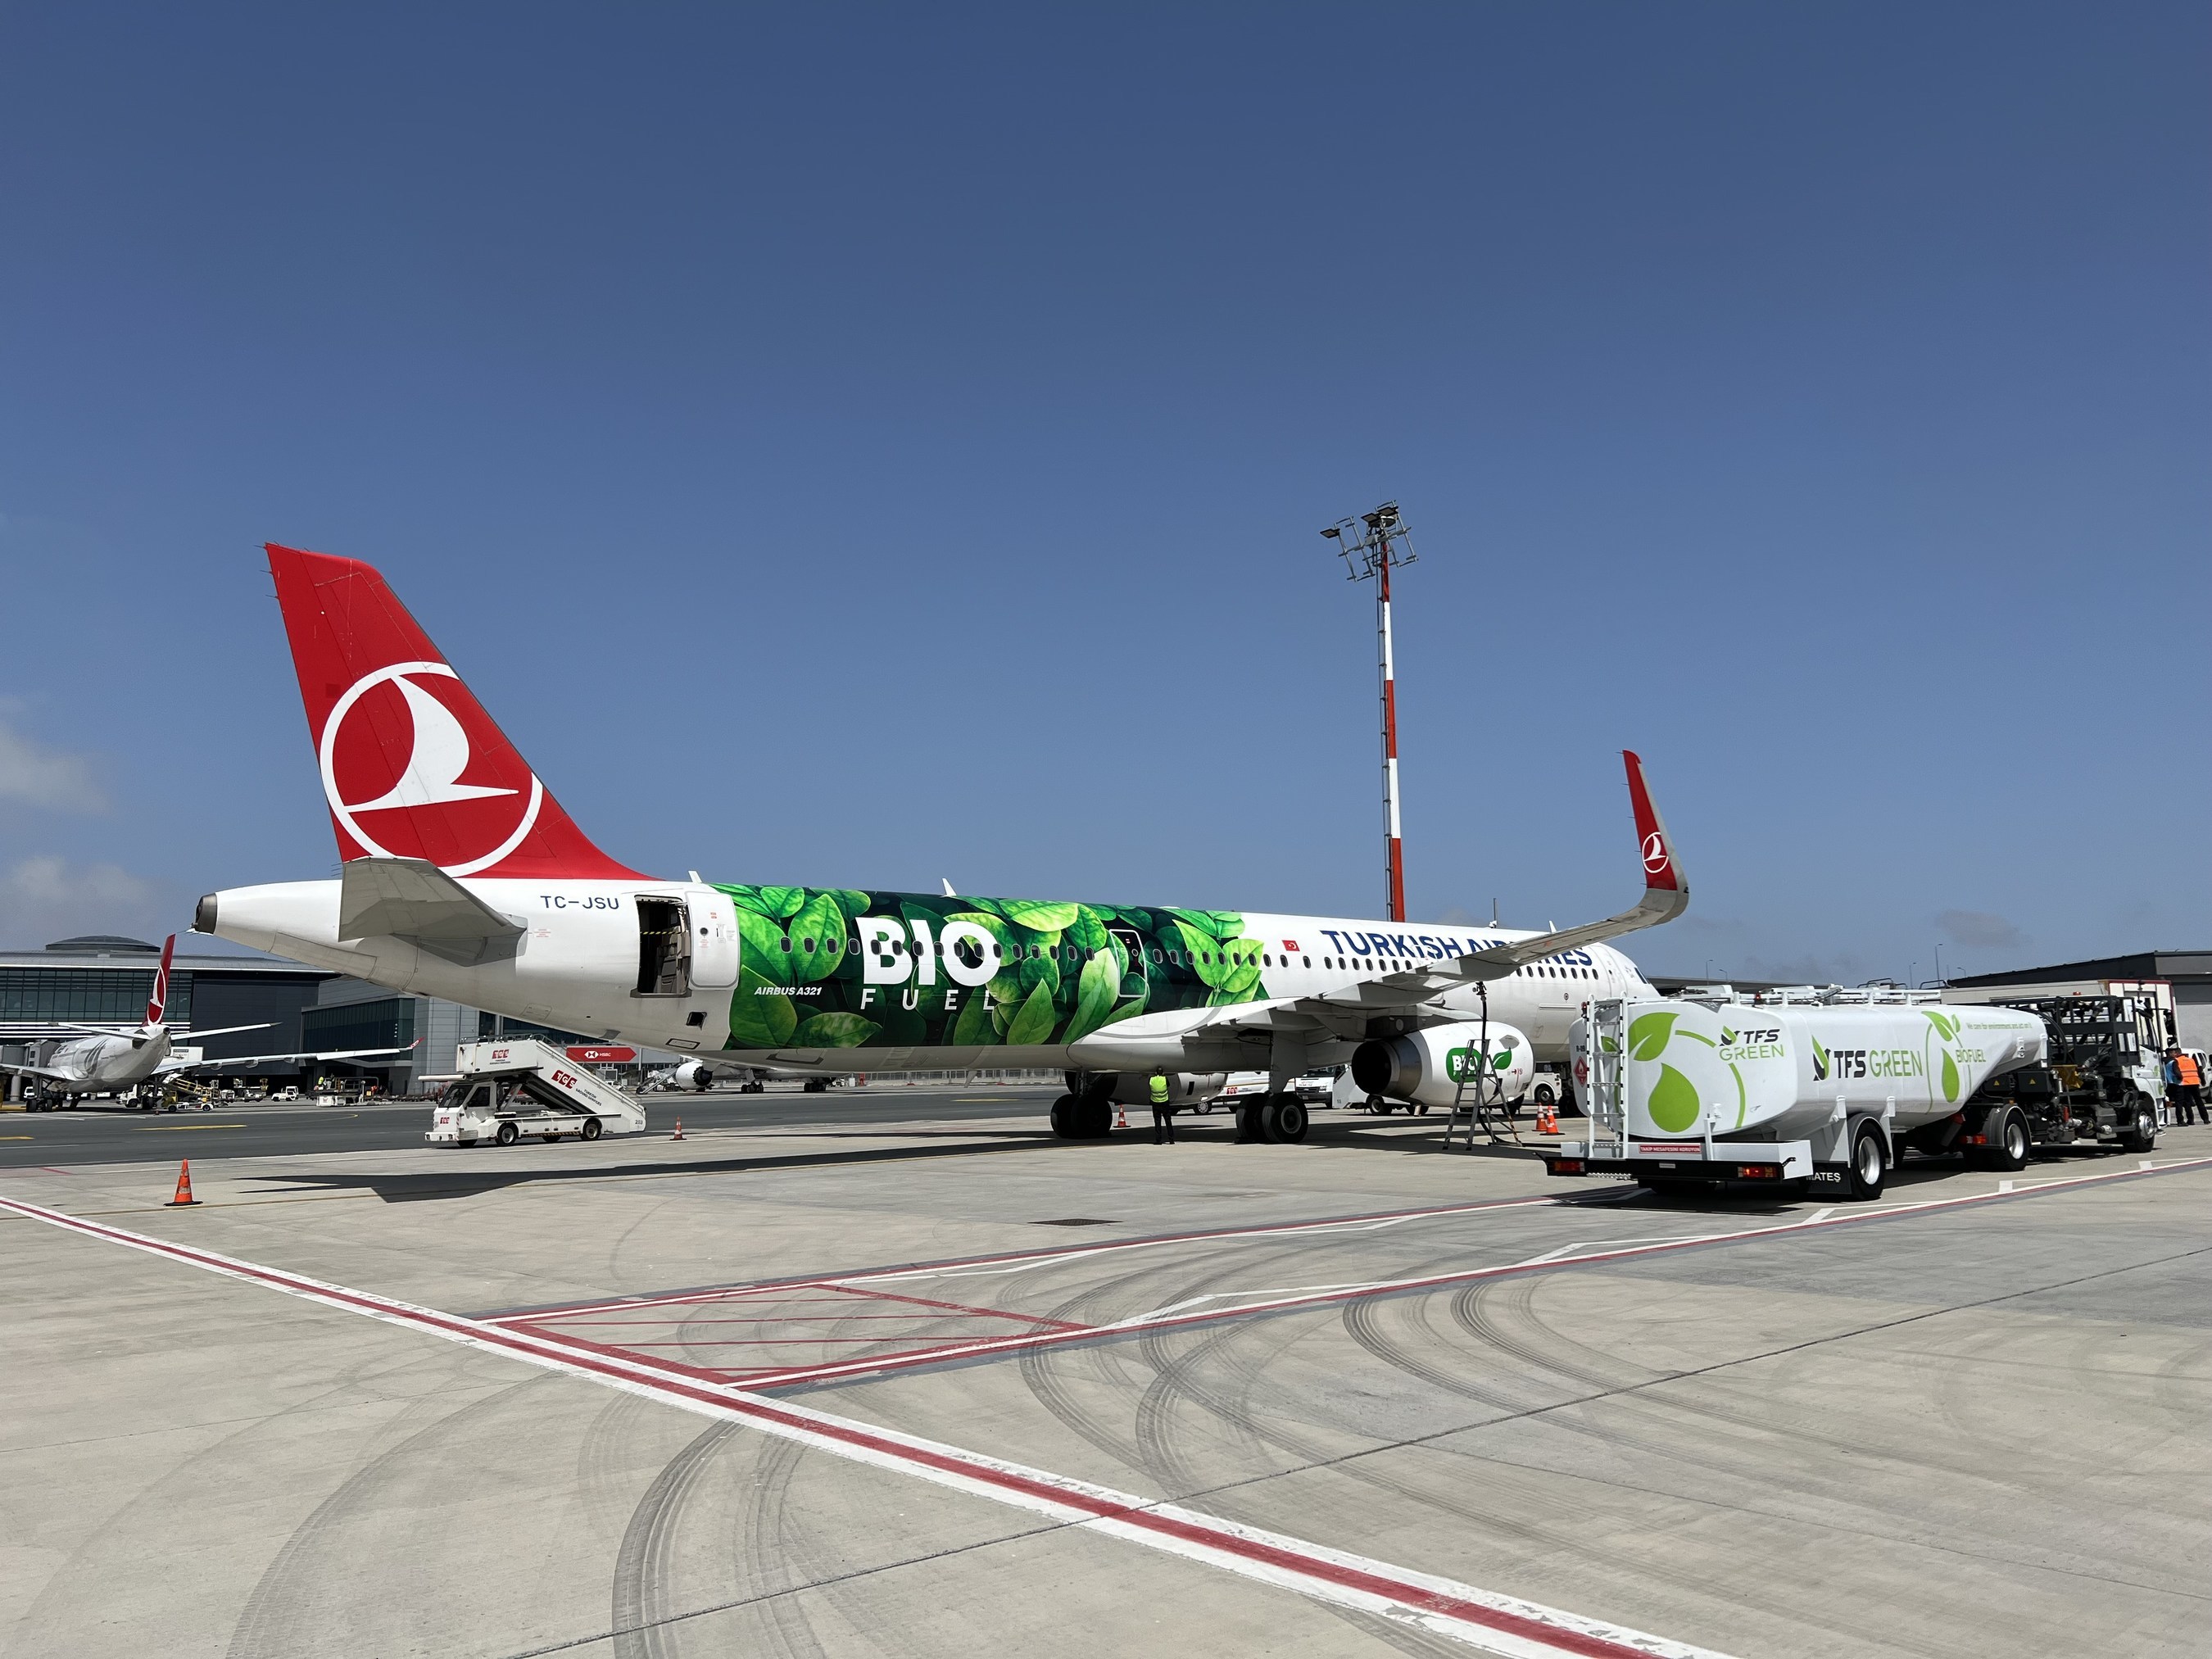 土耳其航空公司可持续发展主题飞机采用环保生物燃料